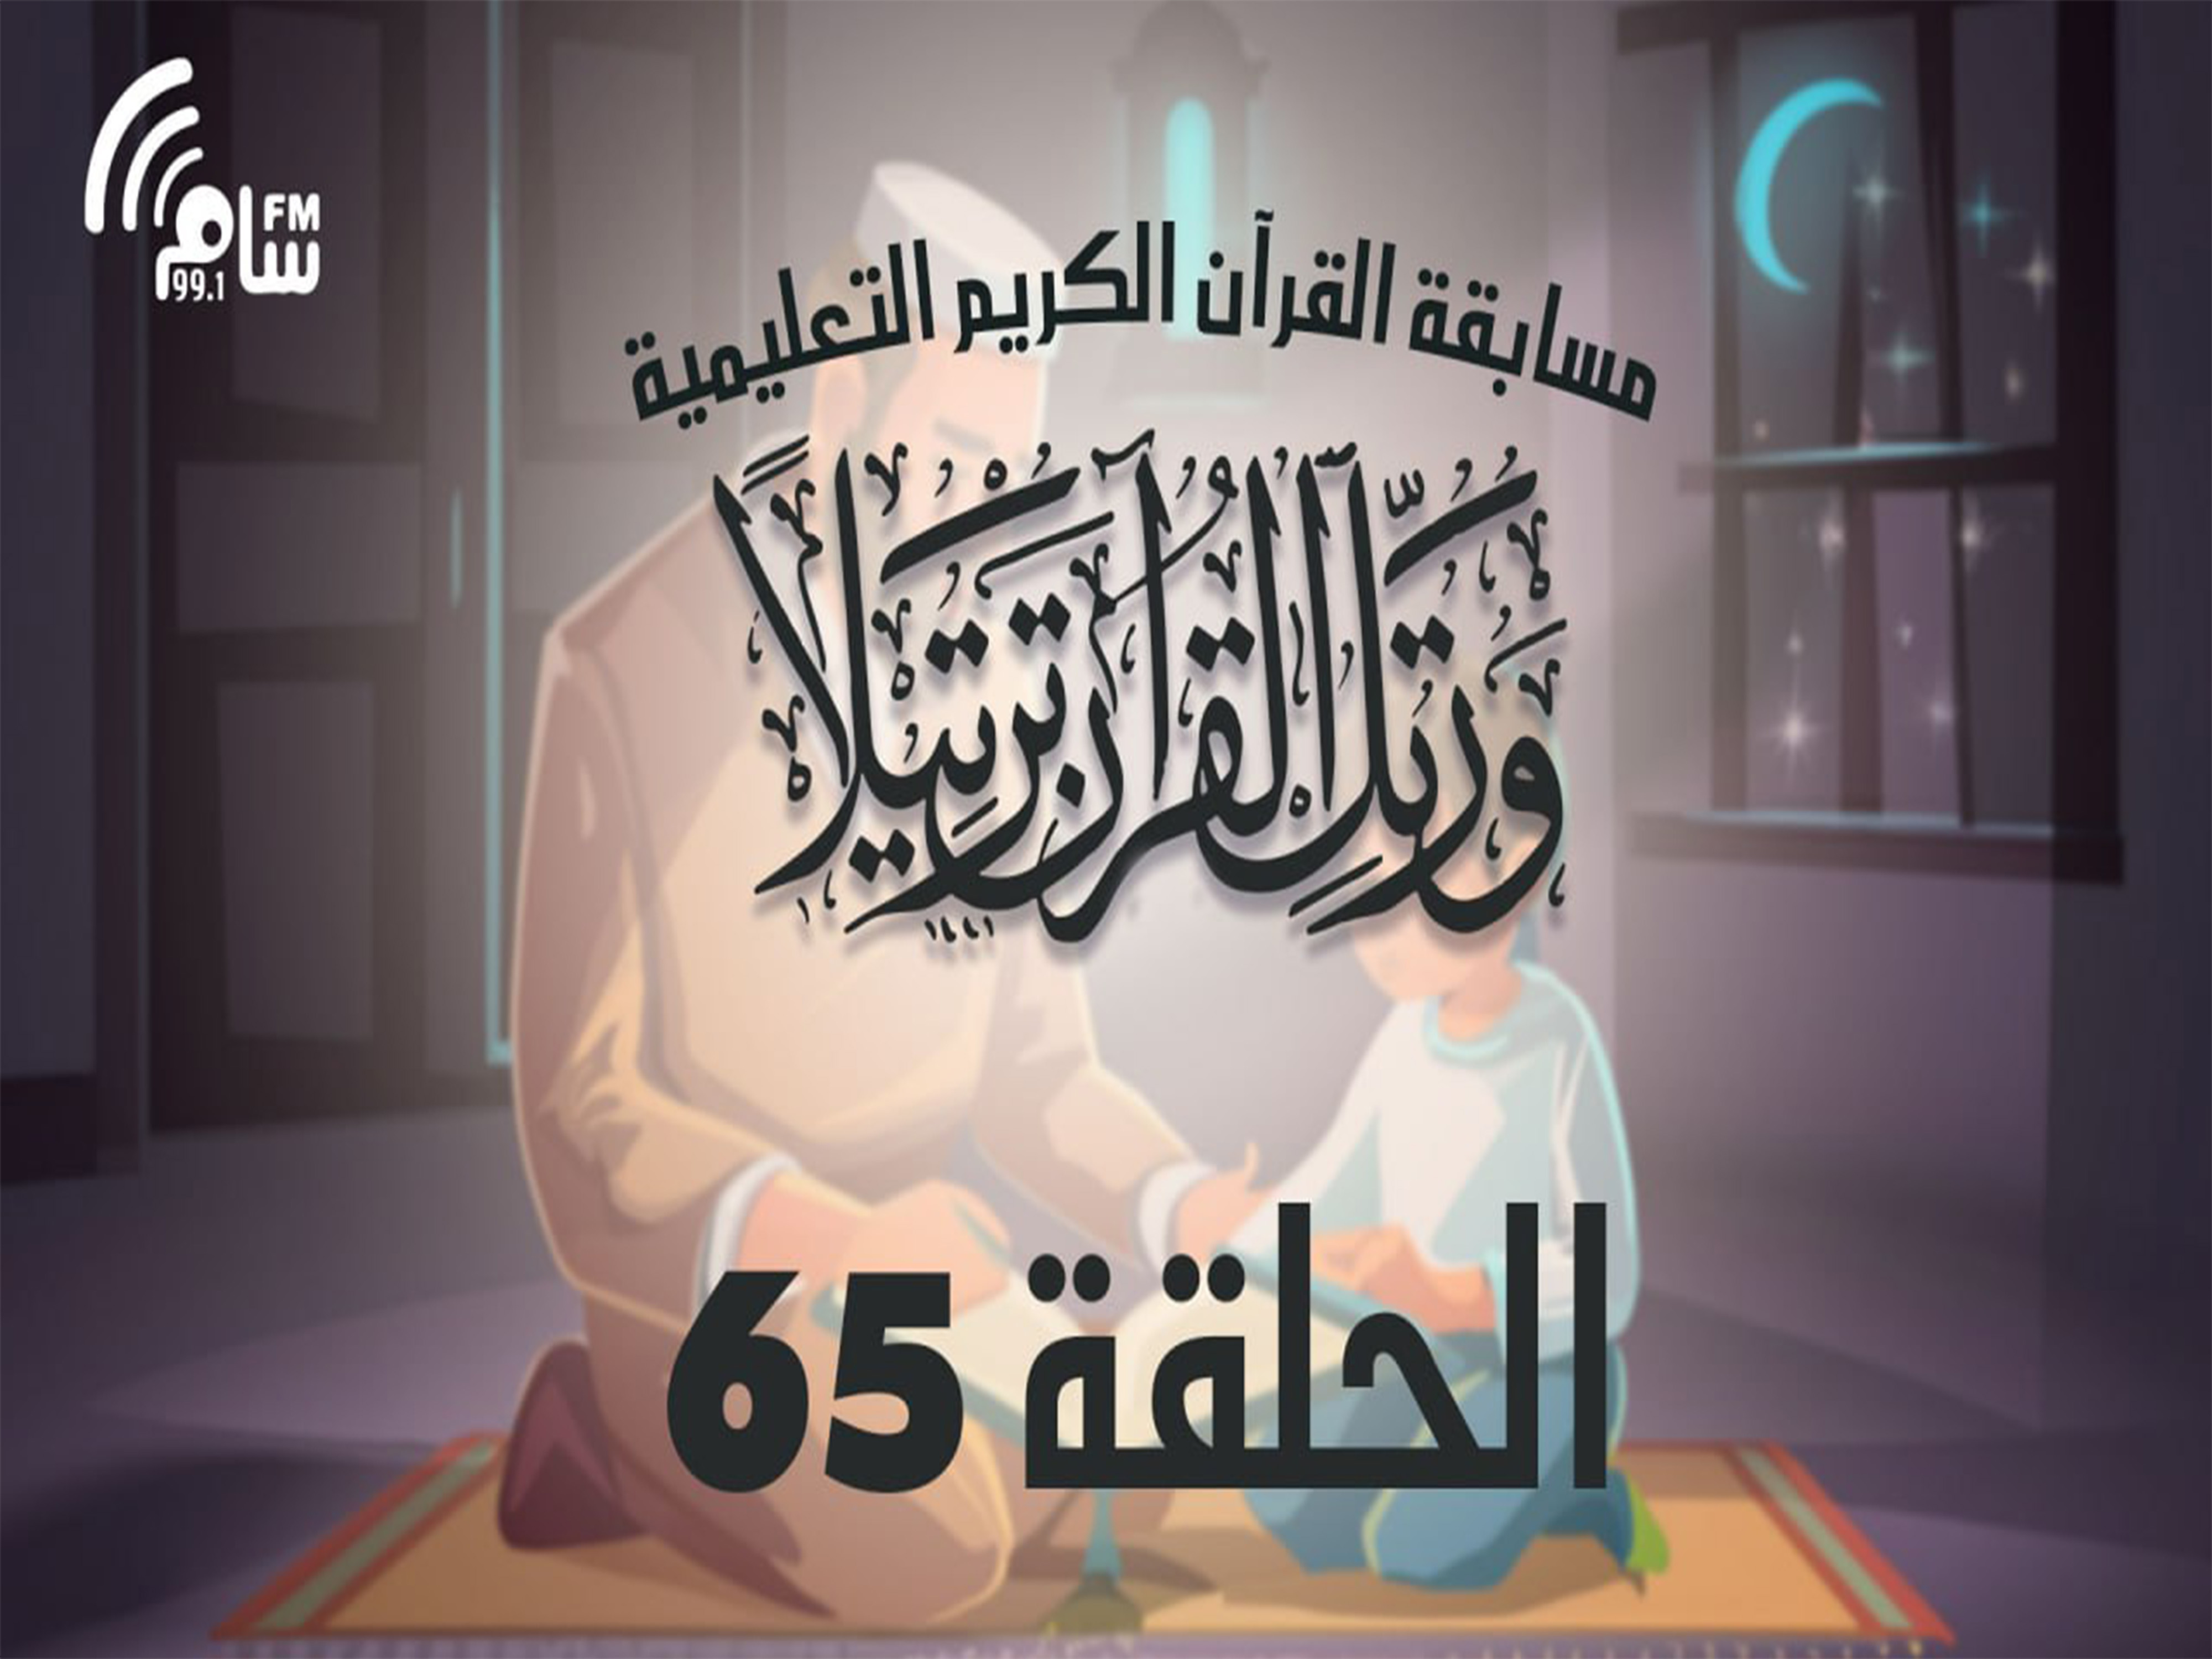 مسابقة القرآن الكريم الحلقة 65 انتاج اذاعة اسام اف ام